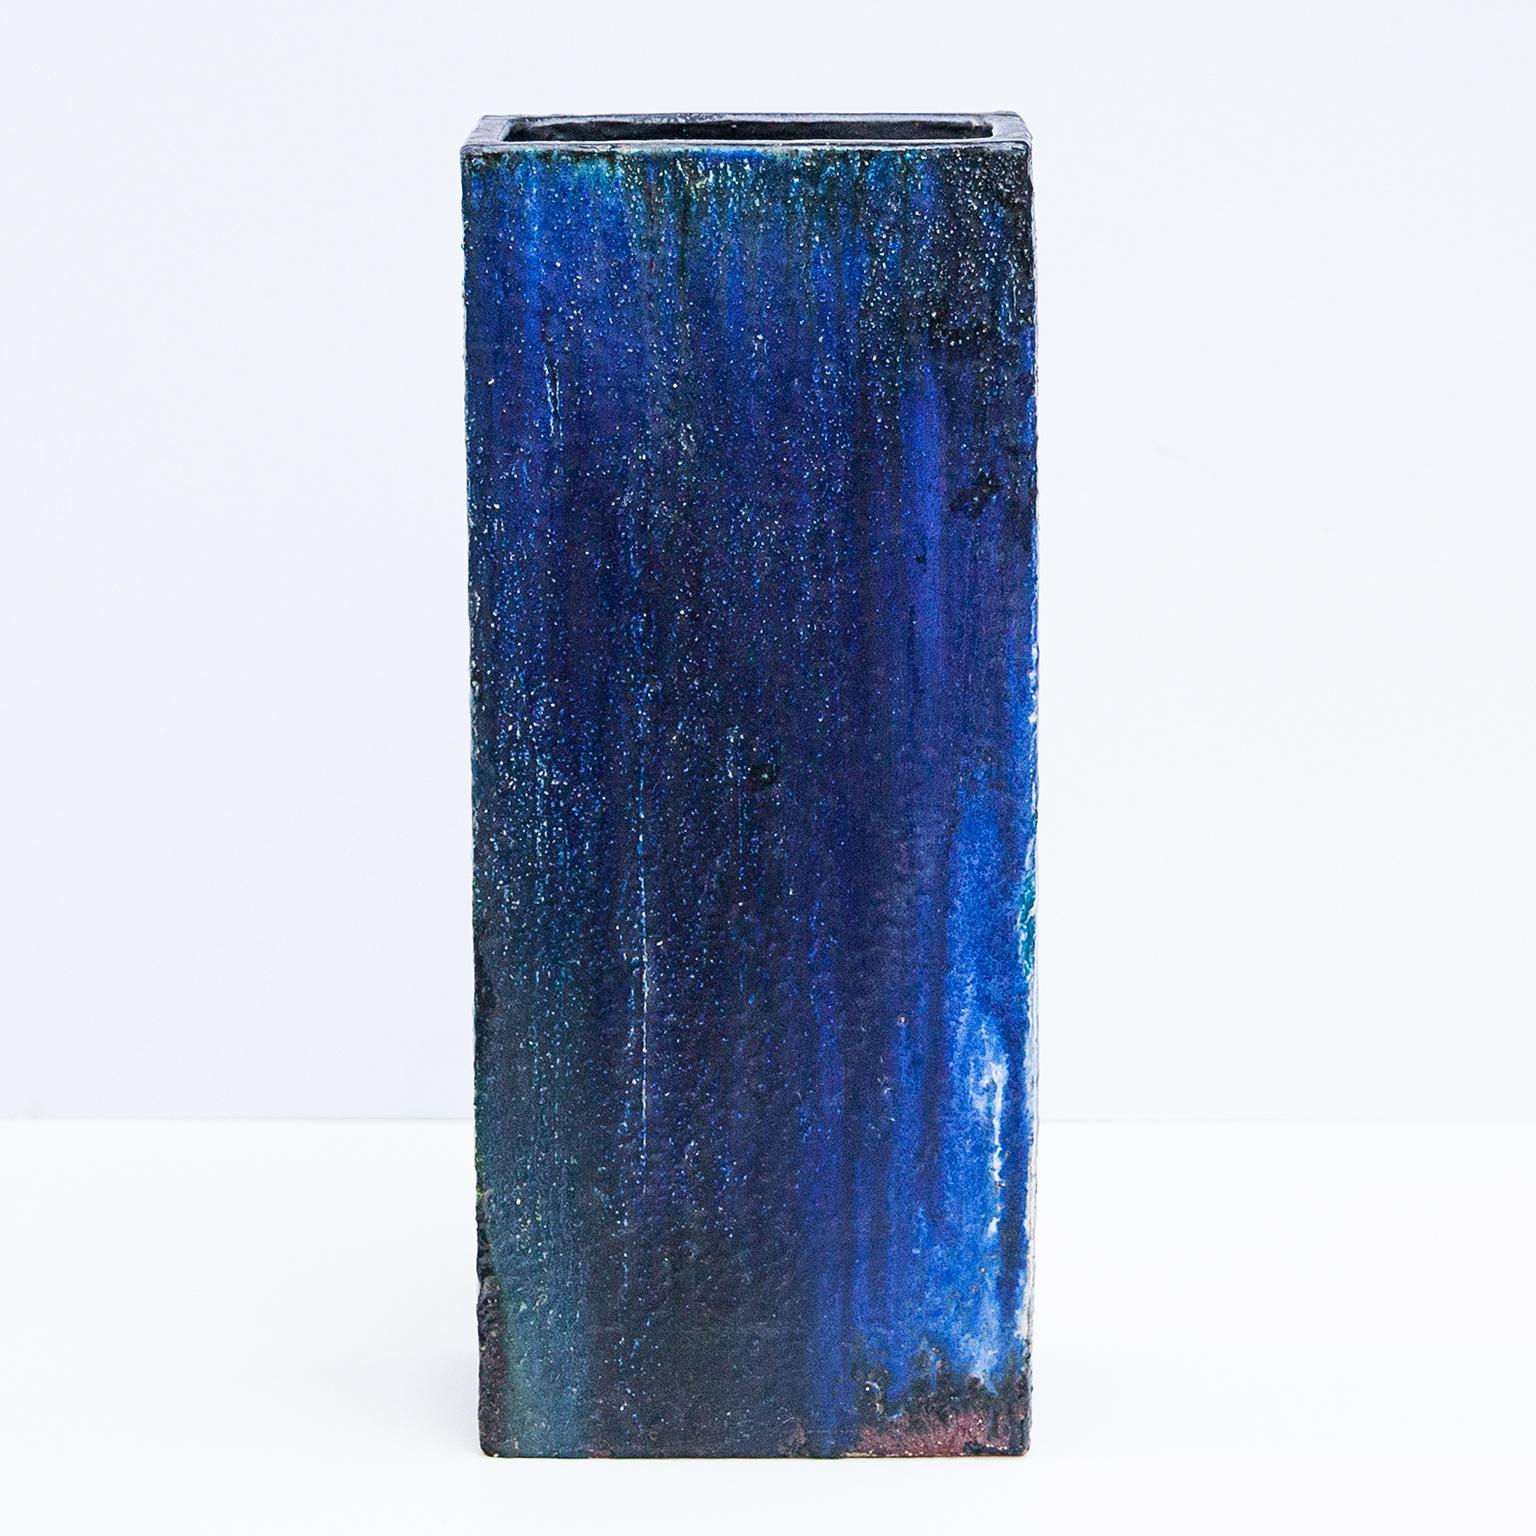 Monumentale blau glasierte Bodenvase aus Keramik von dem Künstler Helmut Friedrich Schäffenacker,  Deutschland 1960er Jahre. Wunderschönes Stück mit Künstlerzeichen.

Helmut Friedrich Schäffenacker (1921-2010) war ein renommierter und produktiver